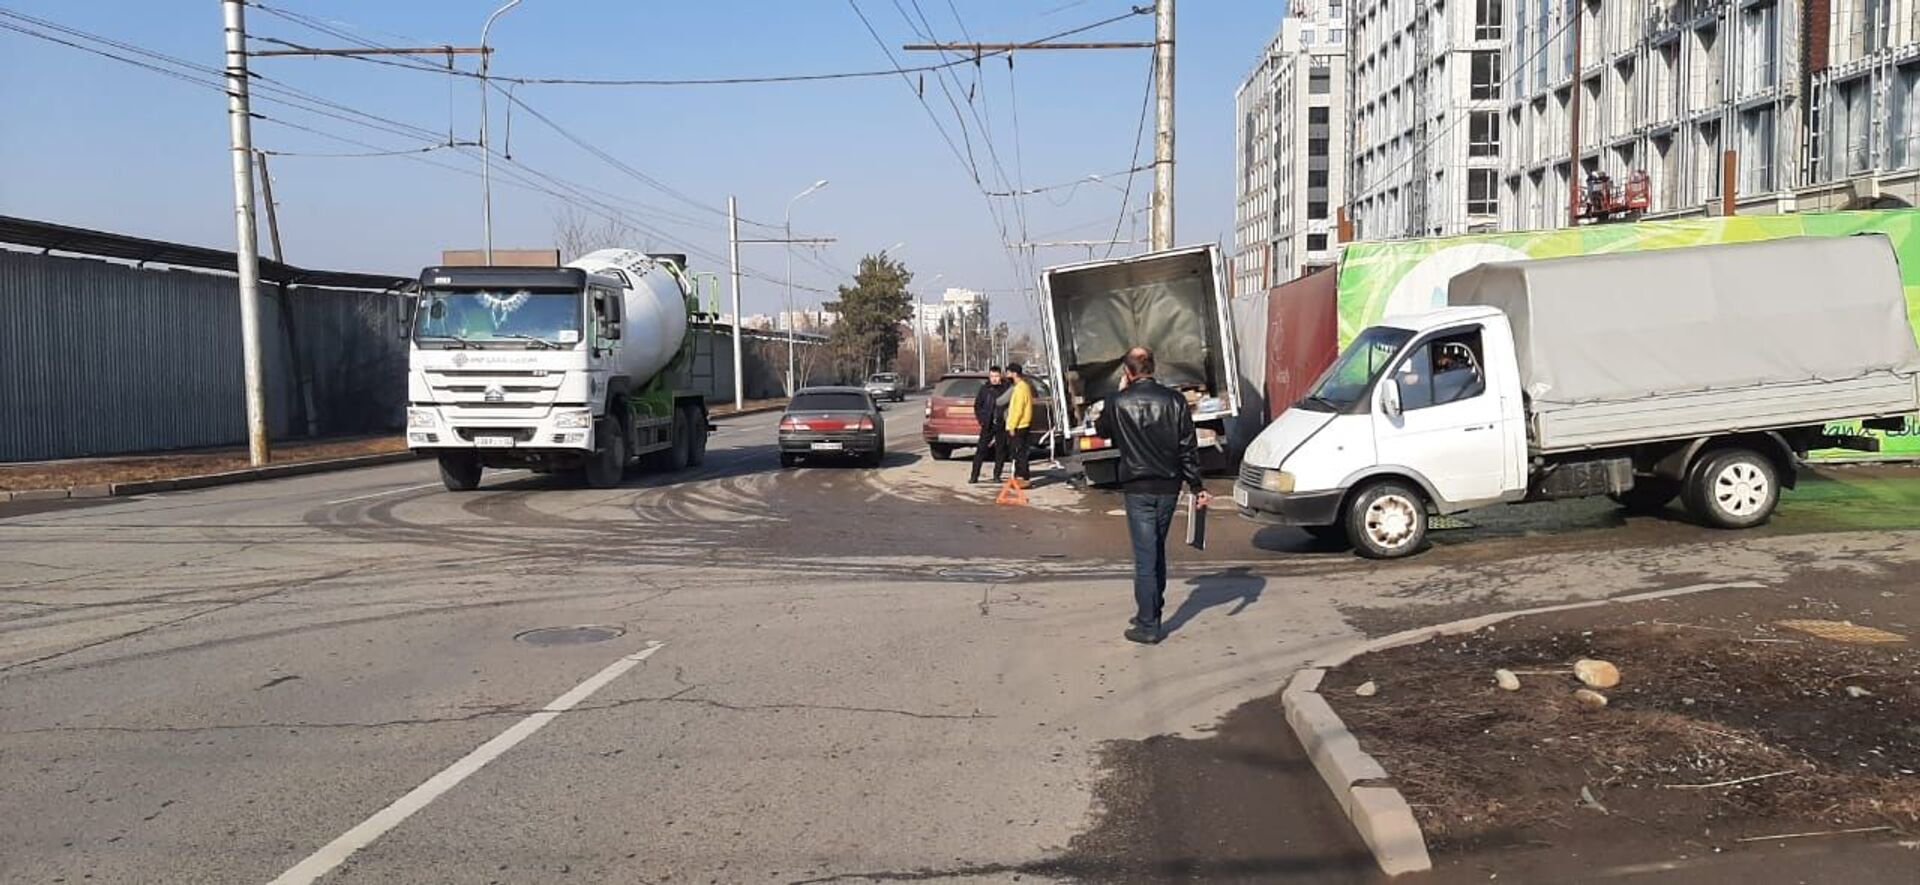 Протащил авто несколько метров: грузовик и легковушка столкнулись в Алматы - Sputnik Казахстан, 1920, 02.02.2021